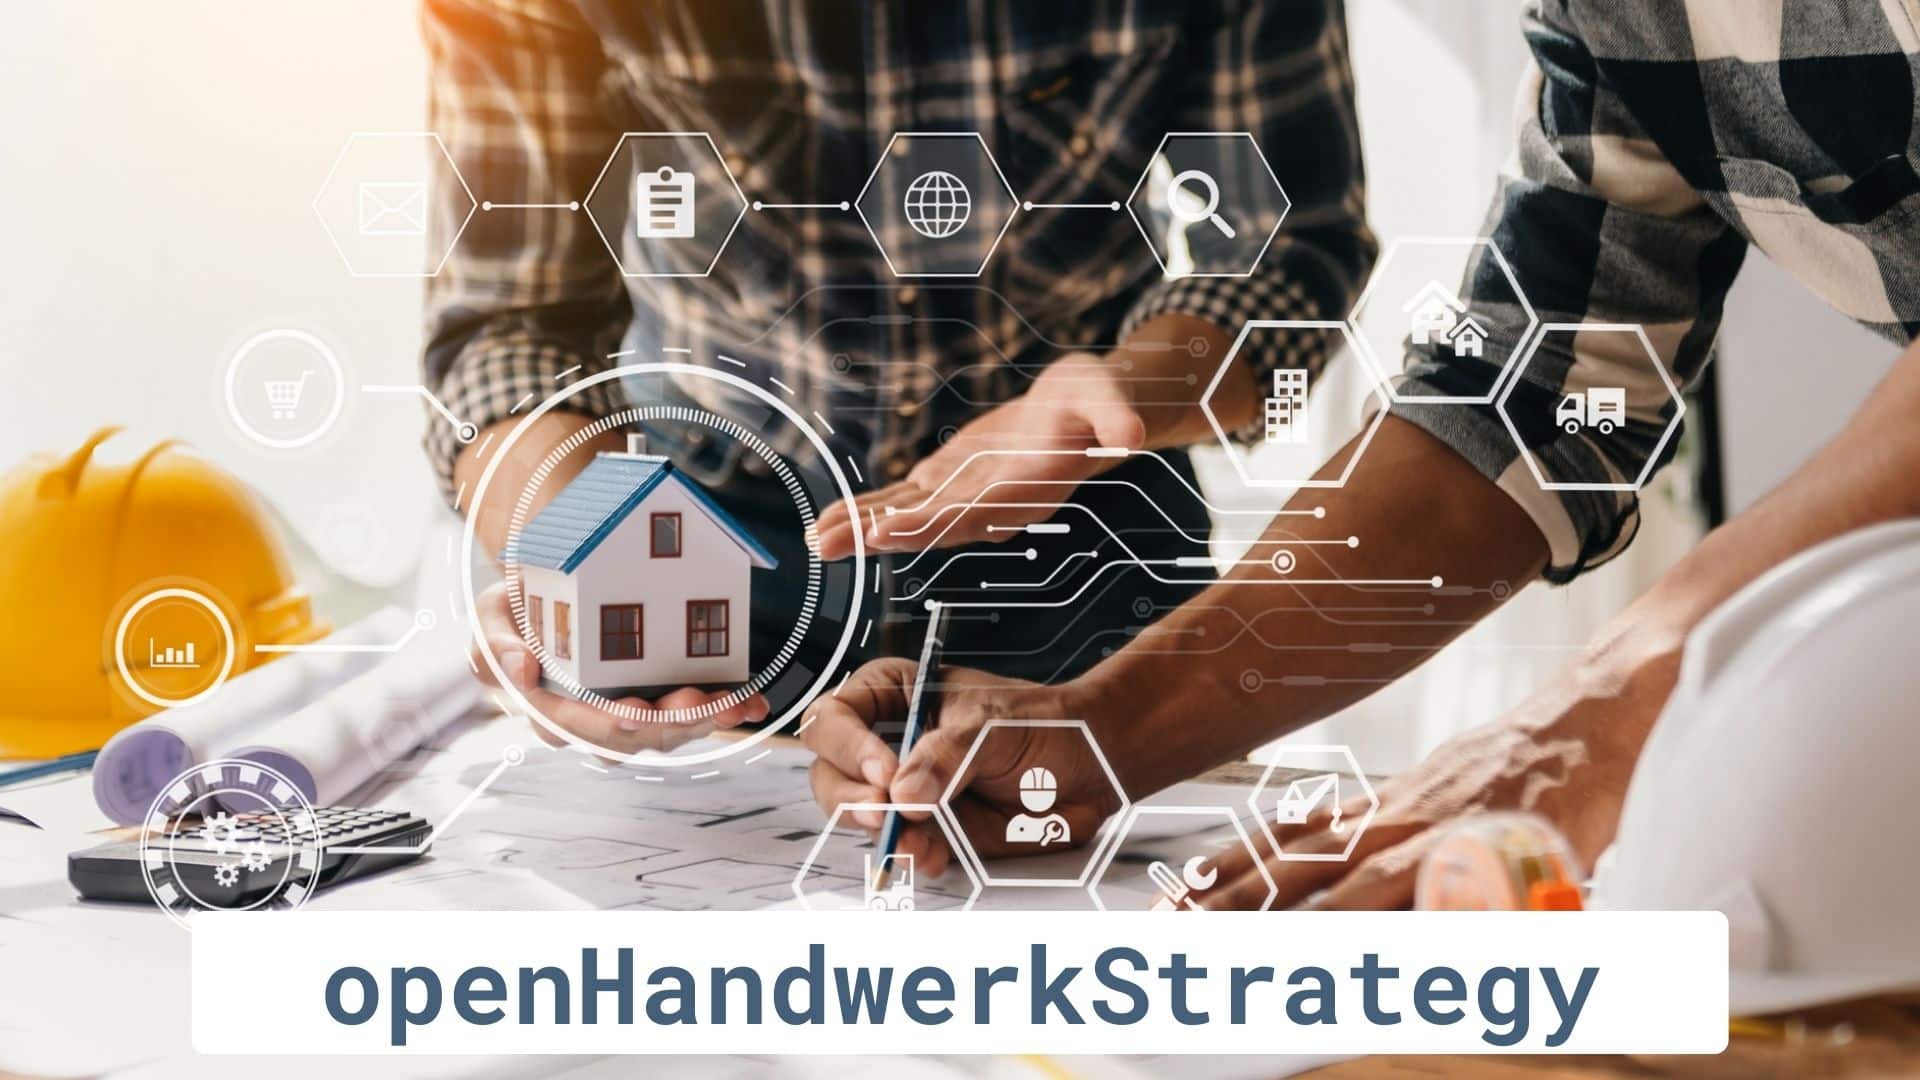 openHandwerkStrategy - die Mastermind von openHandwerk mit unterschiedlichen Gewerken, aber gleichen Aufgaben und Zielen